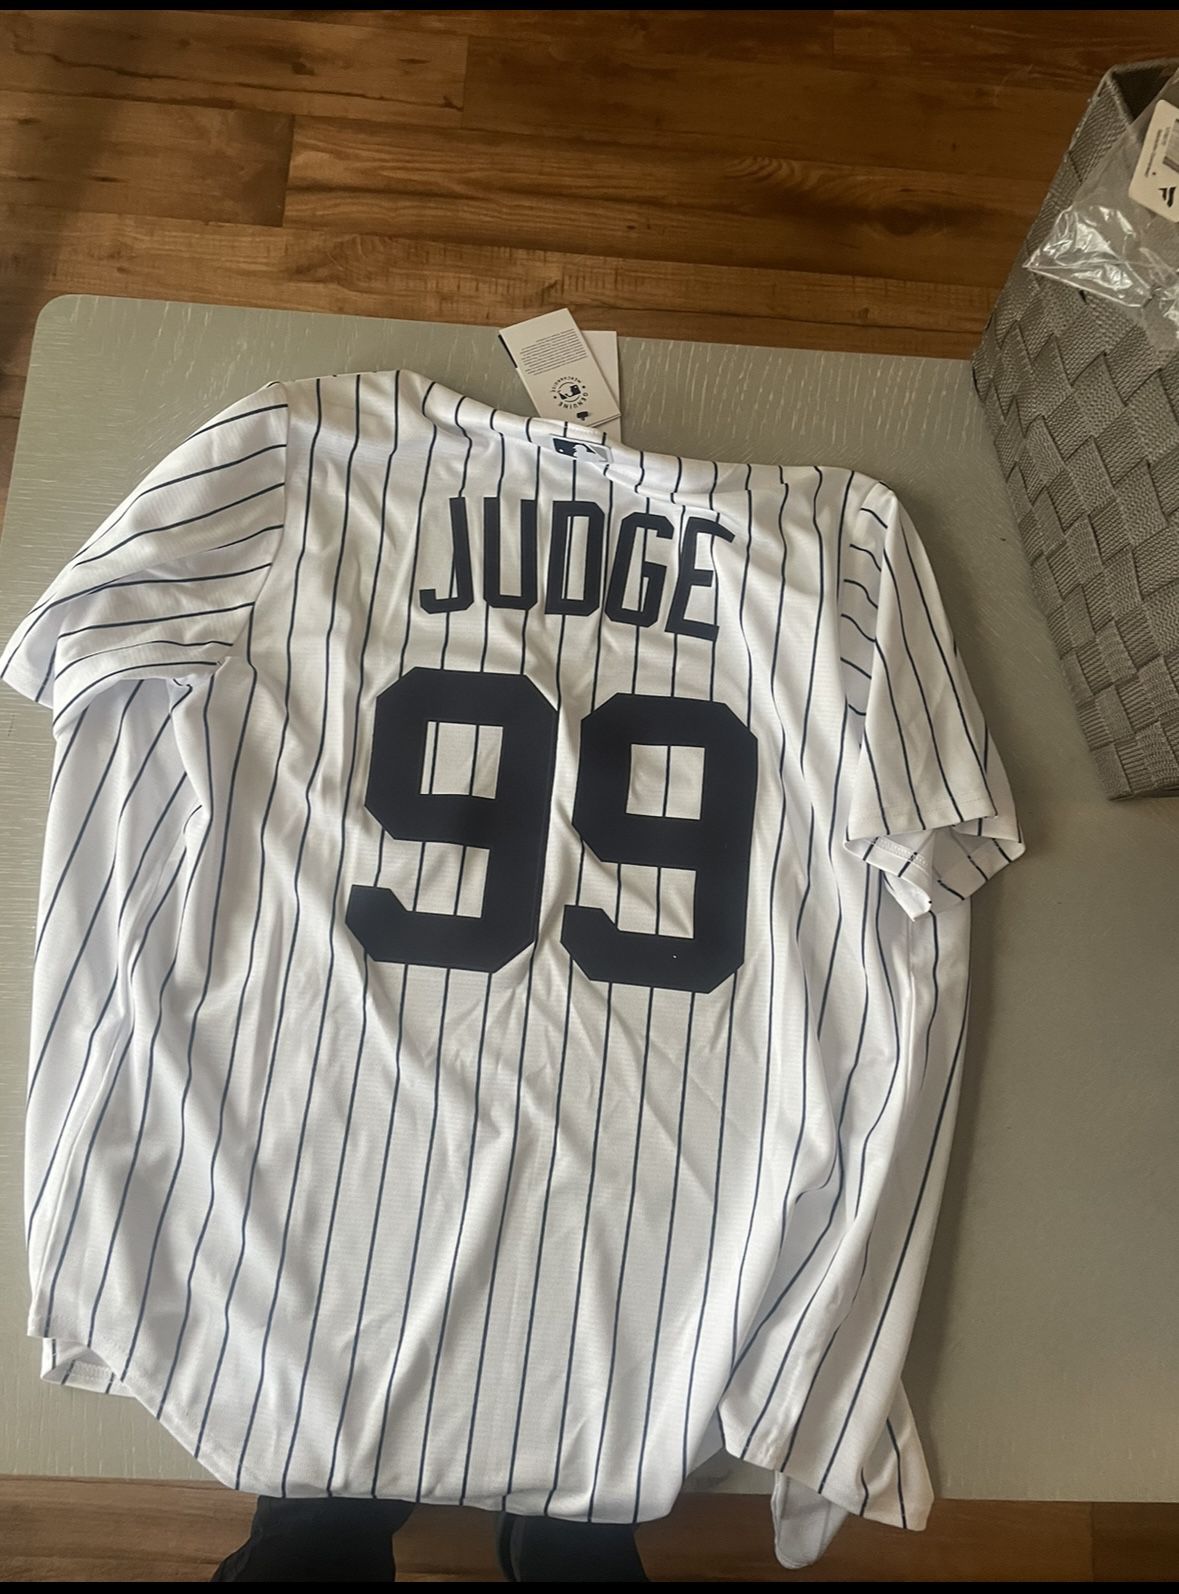 aaron judge jersey sales